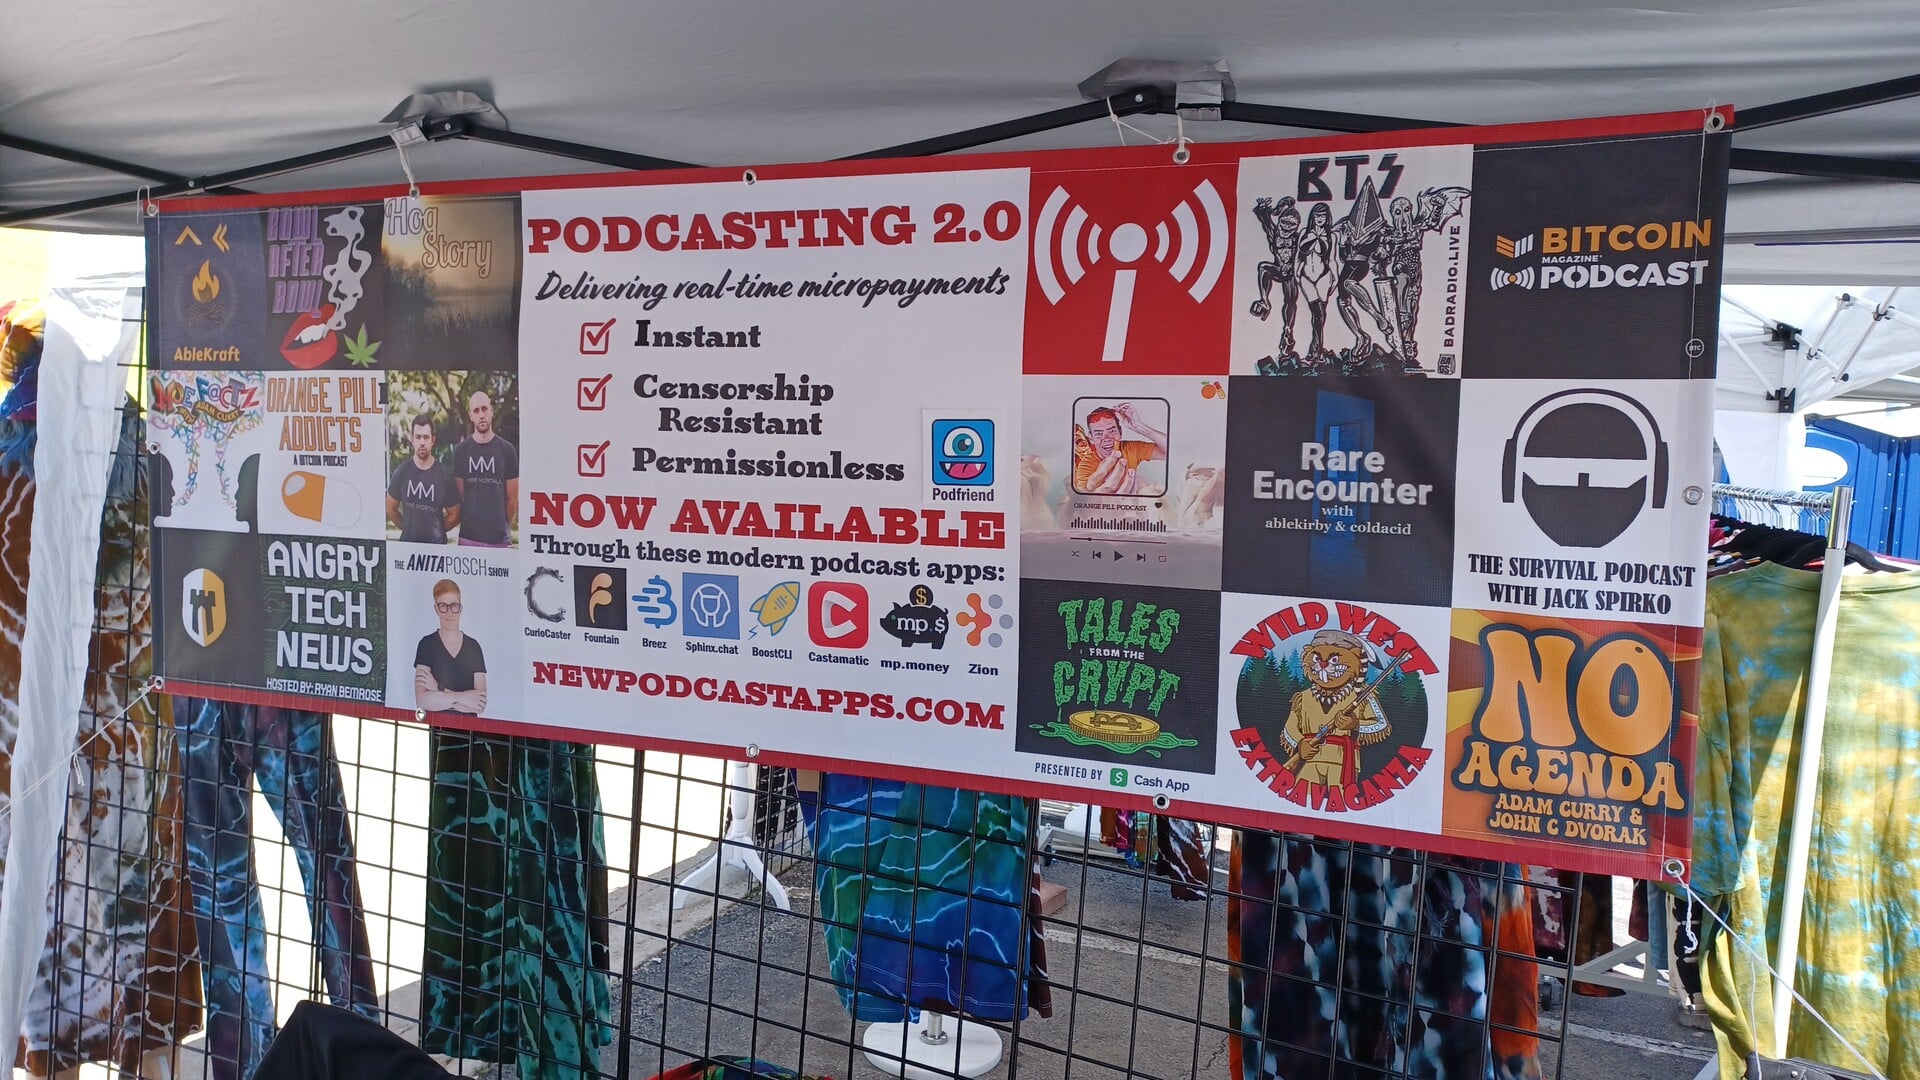 Podcasting 2.0 banner